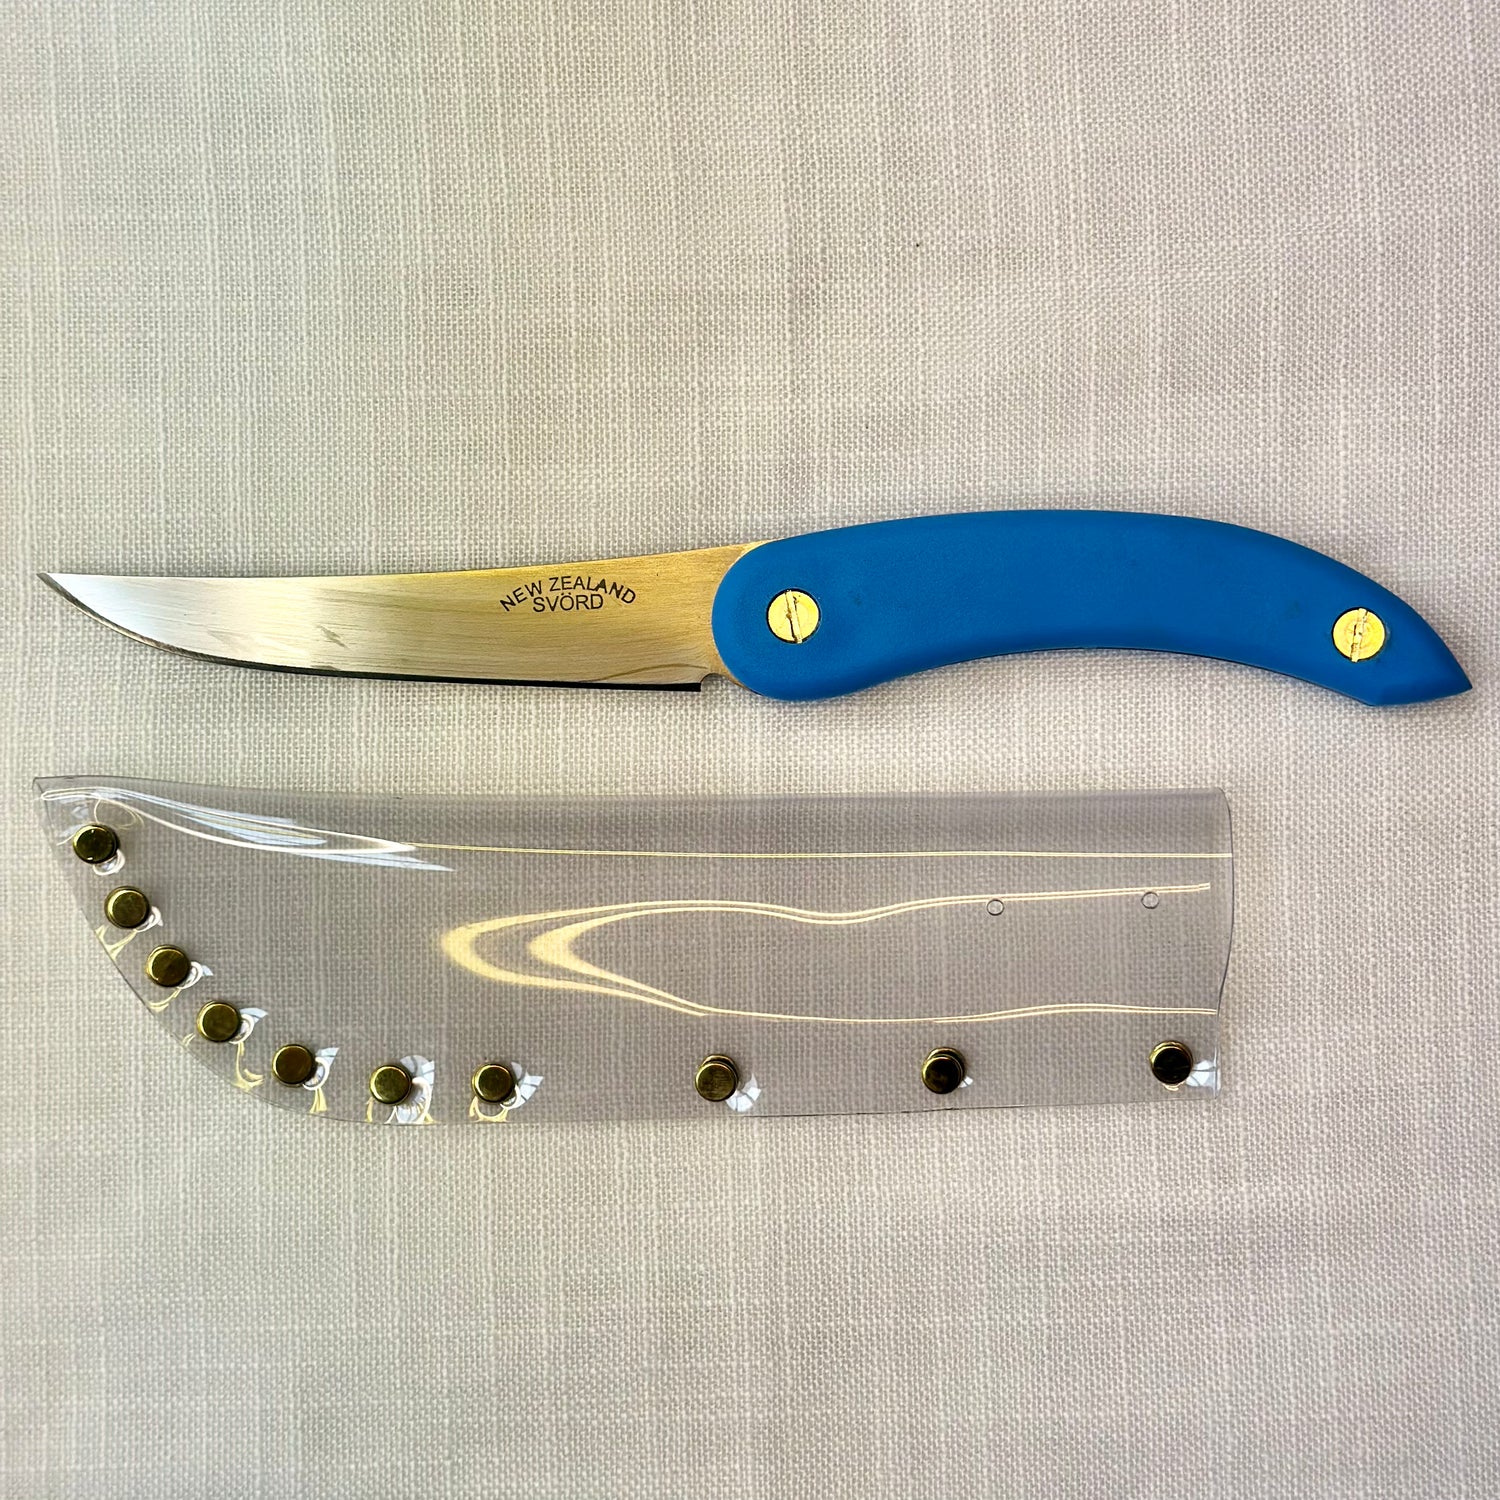 Svord Knives - Kiwi Utility Knife, Blue